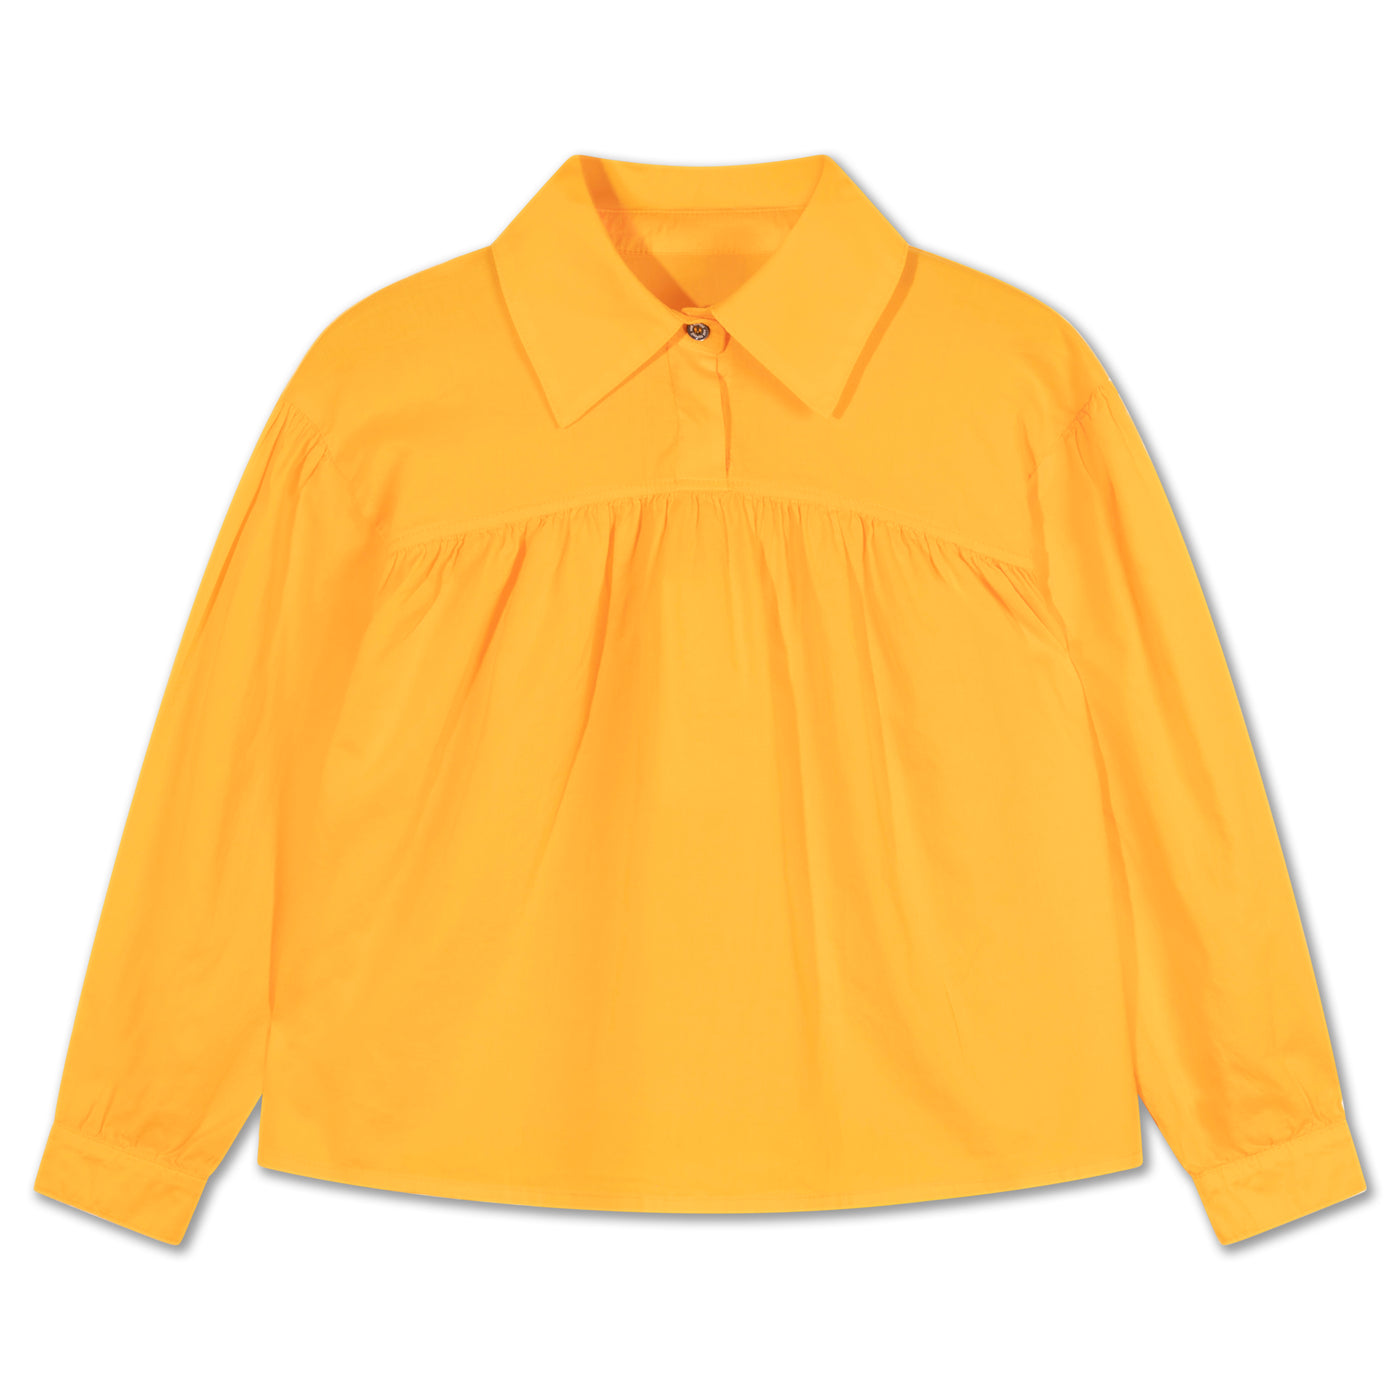 at ease blouse - glory orange